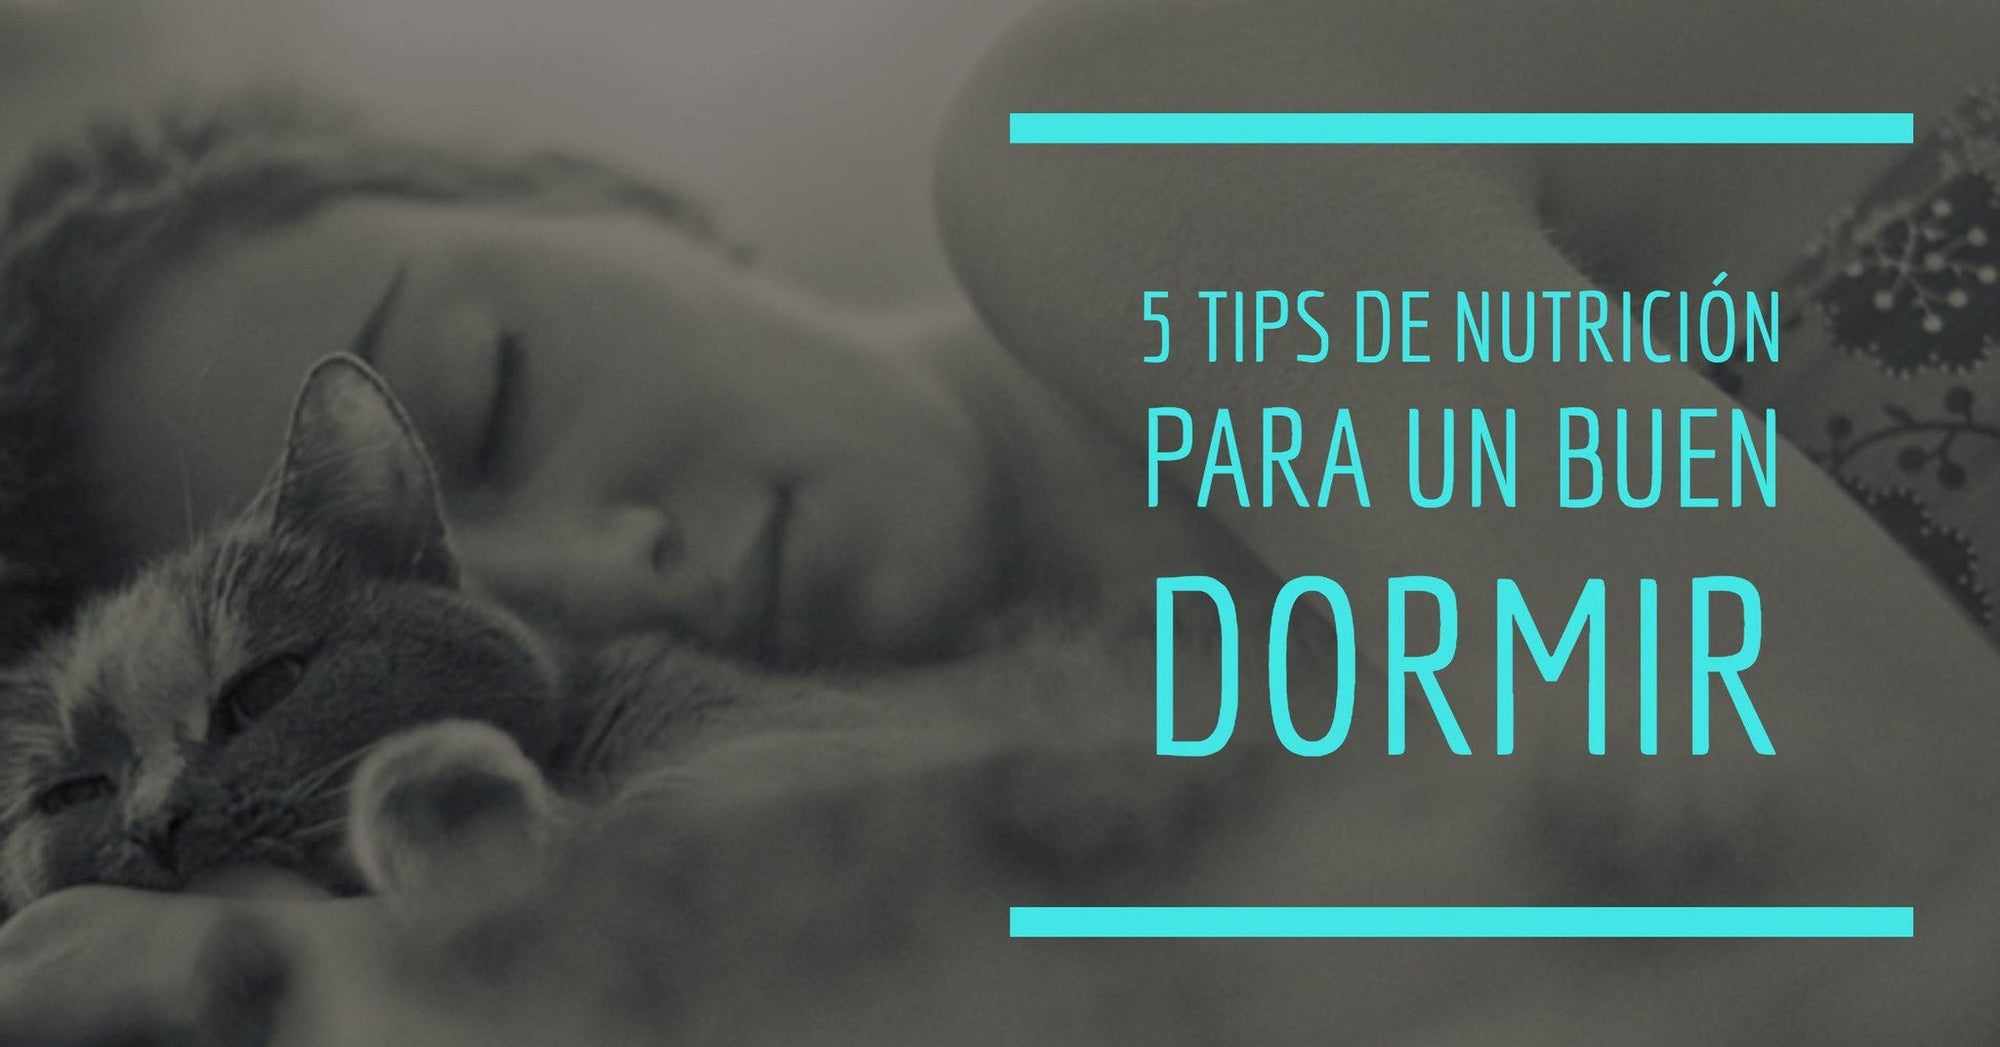 5 Tips de nutrición para un buen dormir